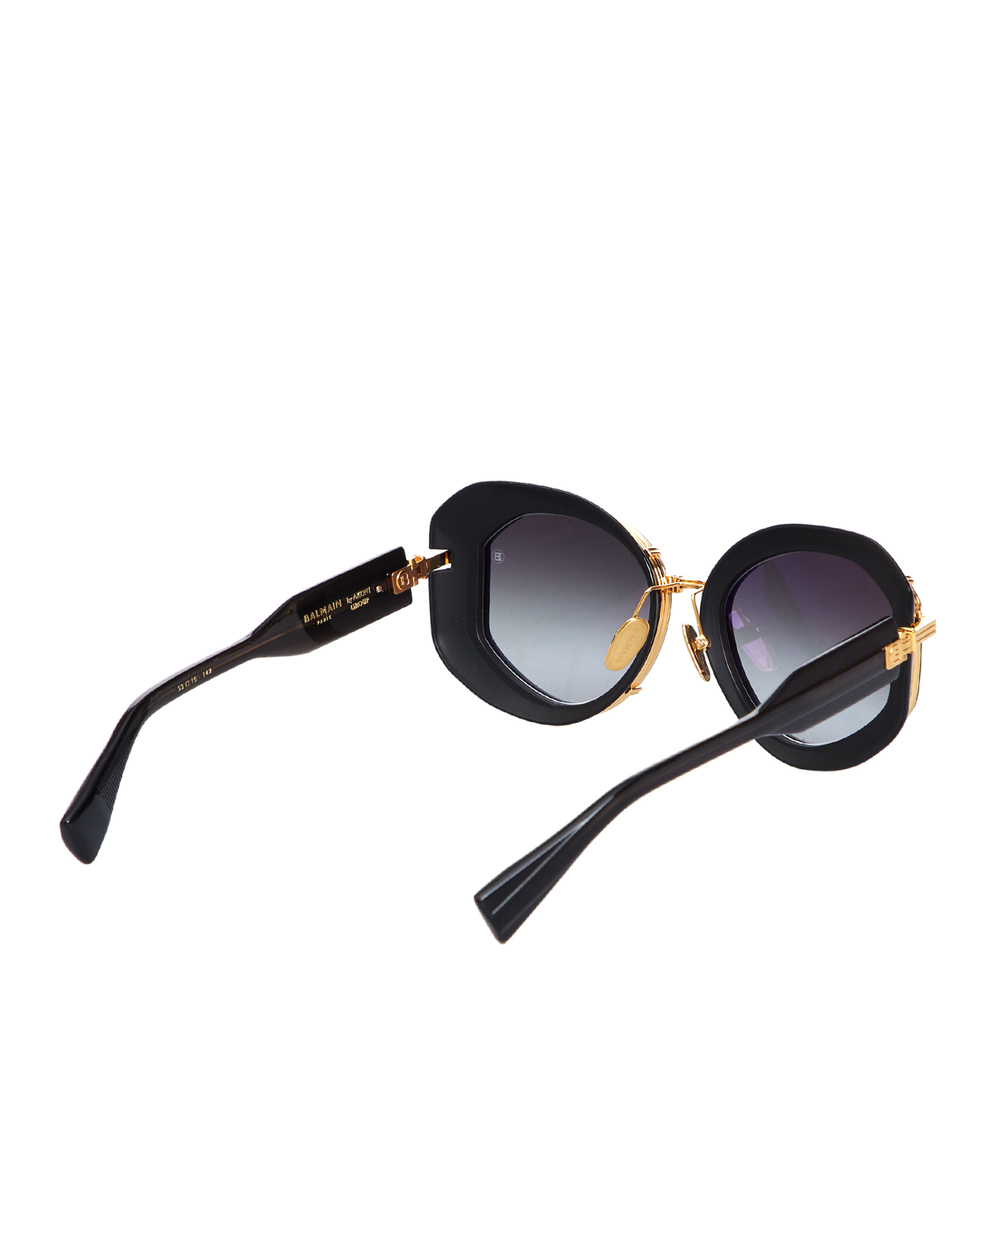 Солнцезащитные очки Brigitte Balmain BPS-129A-53, черный цвет • Купить в интернет-магазине Kameron